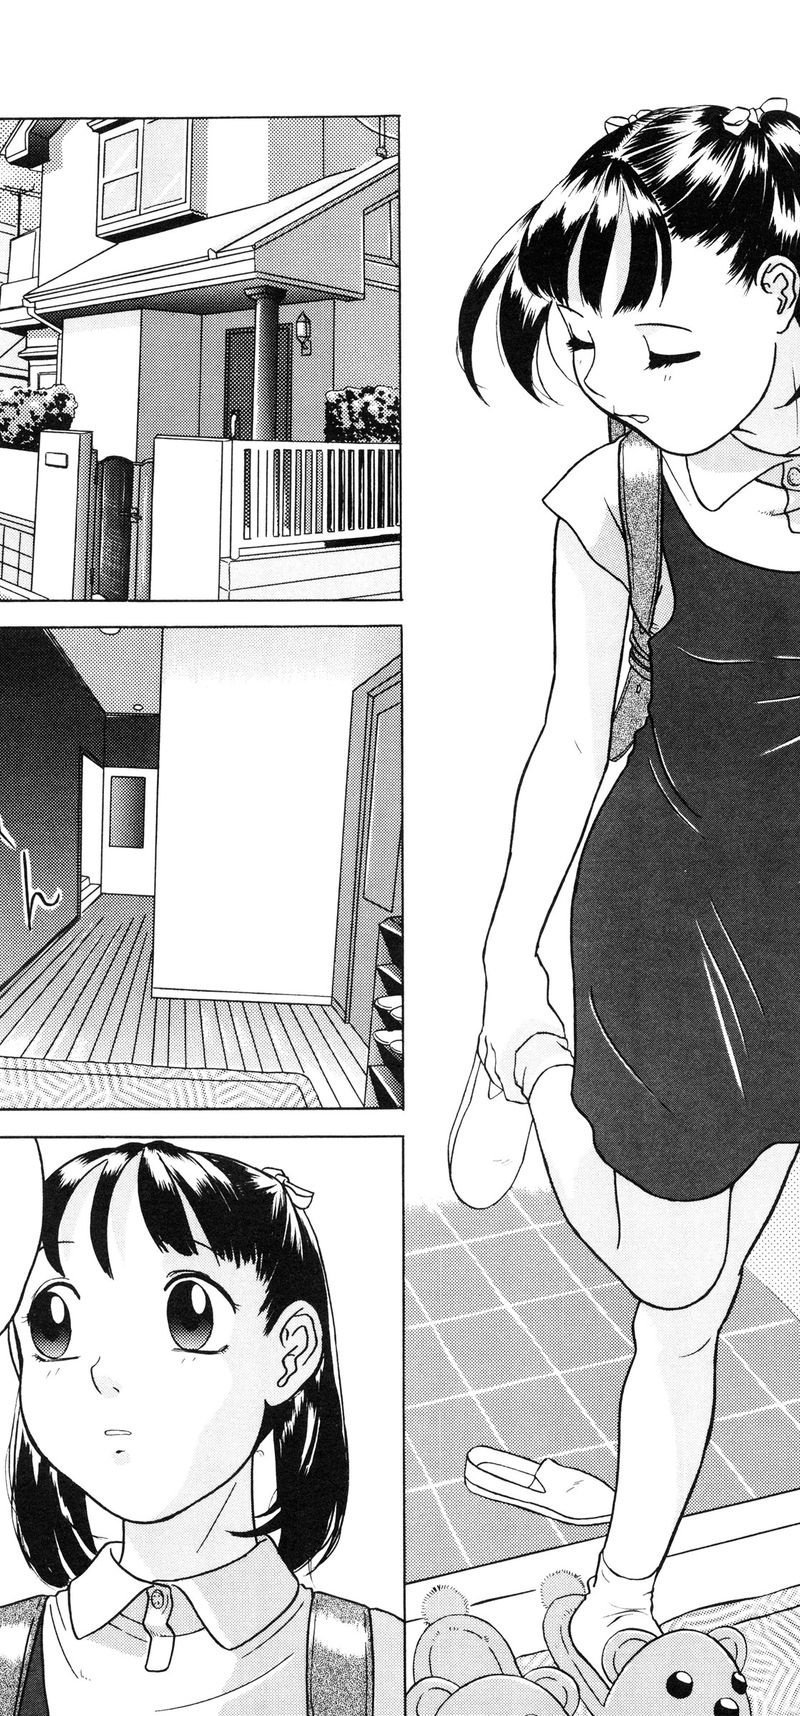 [Loli] Lolita Girls Collection Chapter 3: Jone, Tôi, và Onii-chan - Trang 3